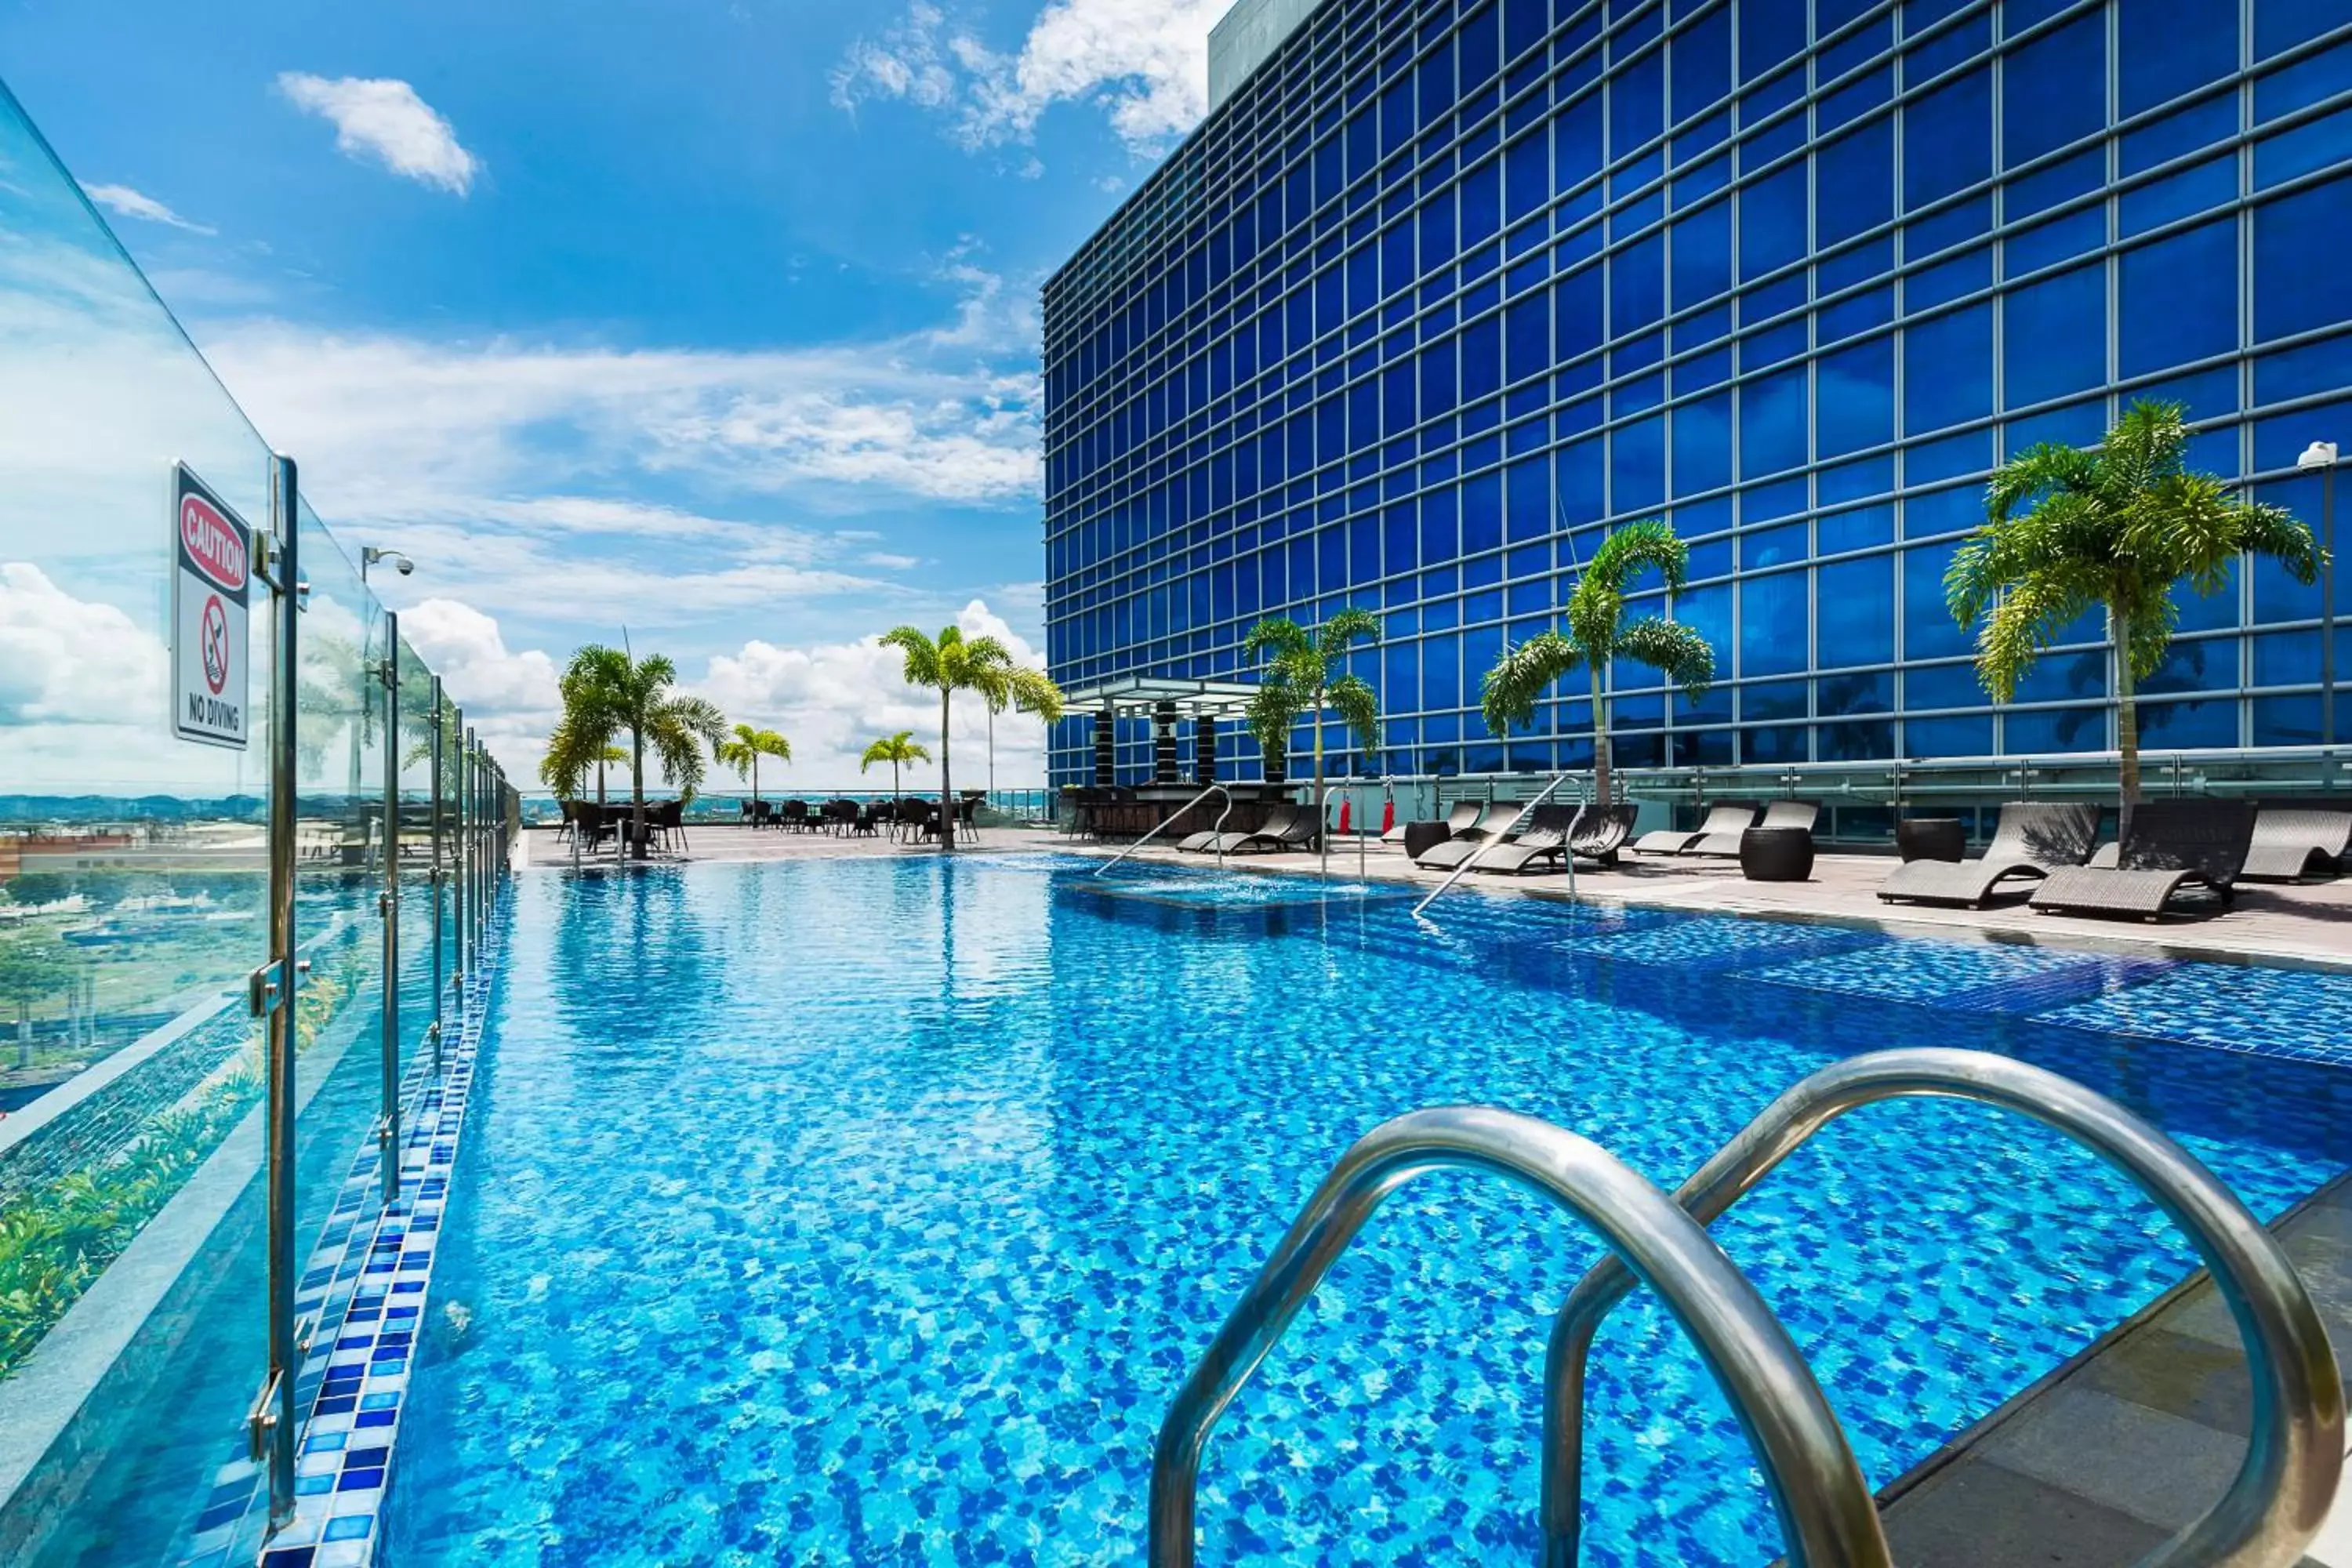 Swimming Pool in Richmonde Hotel Iloilo